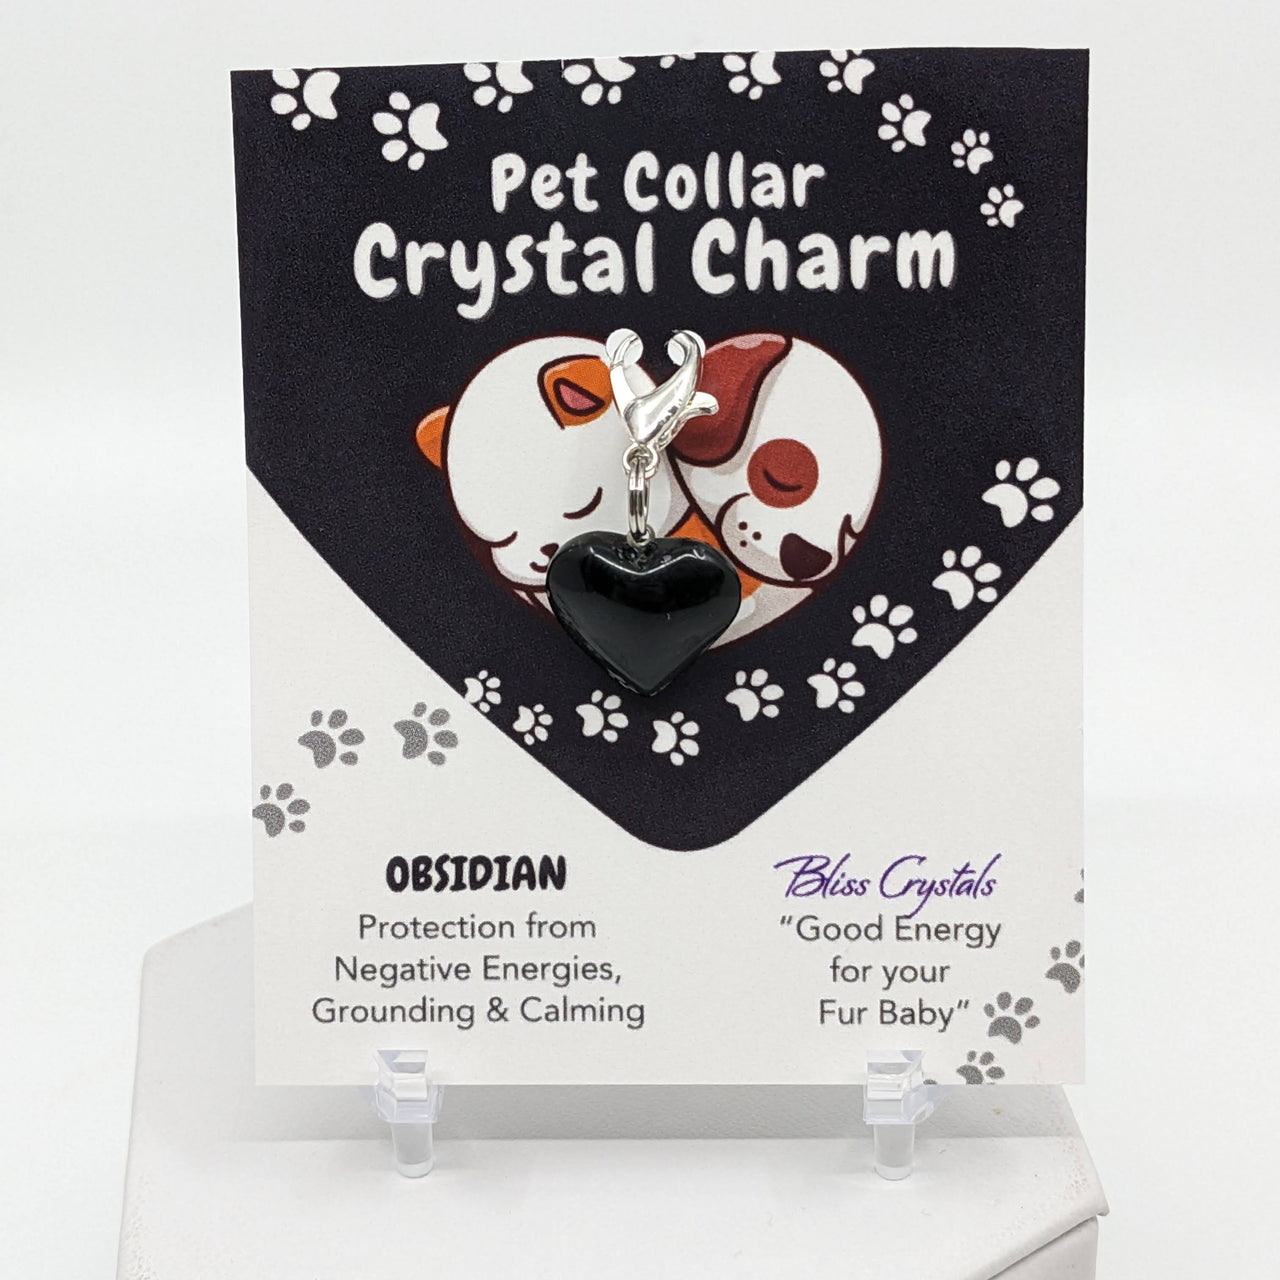 Pet Collar Clip-On Crystal Charm - Obsidian #LV3478